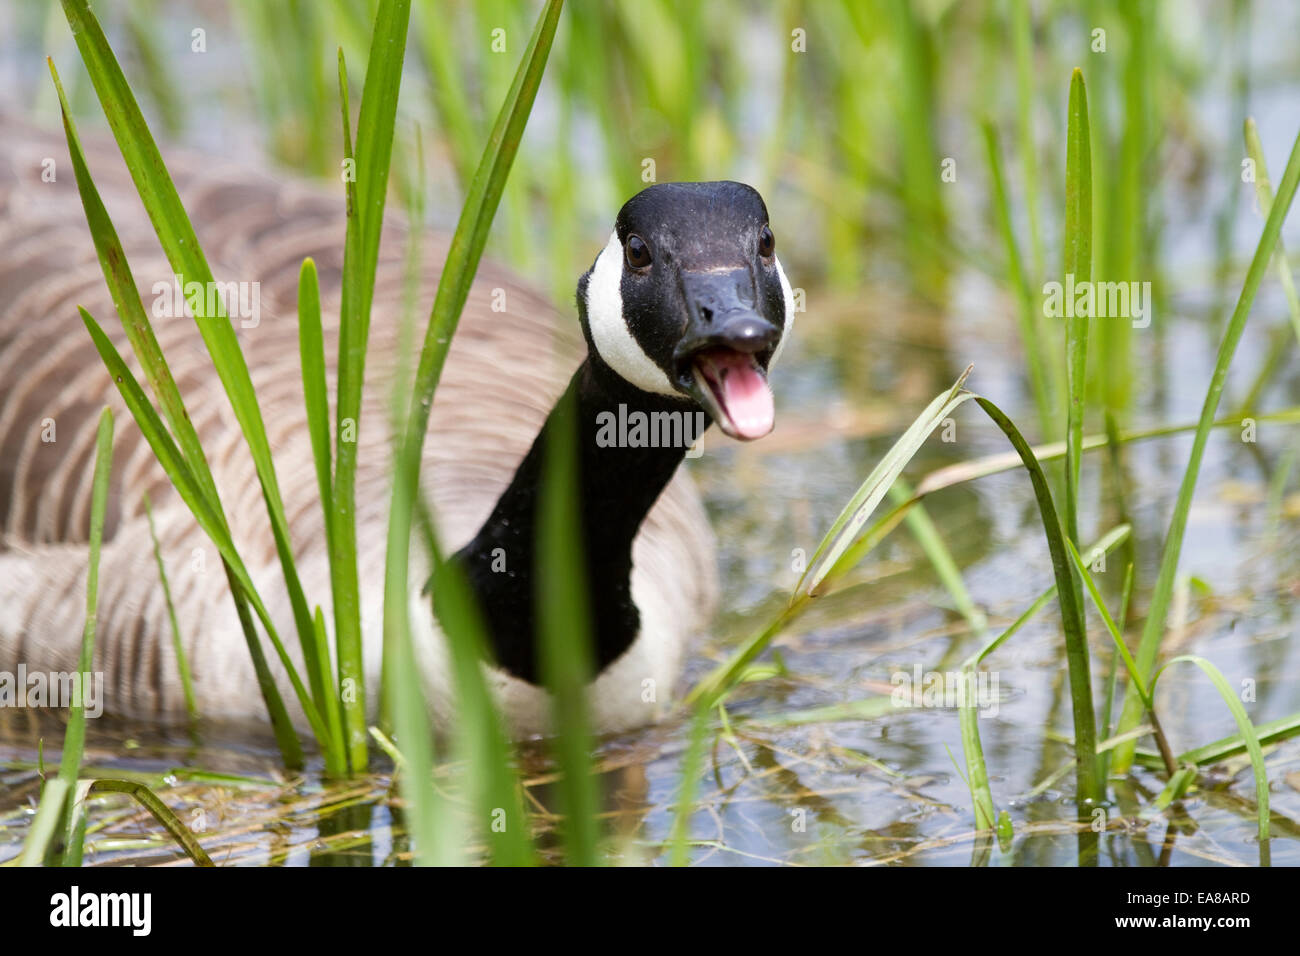 Canada Goose nuoto attraverso le lamelle verso il sibilo della fotocamera. Il suo becco è aperto e si può vedere la sua lingua. Presi al di fuori Foto Stock